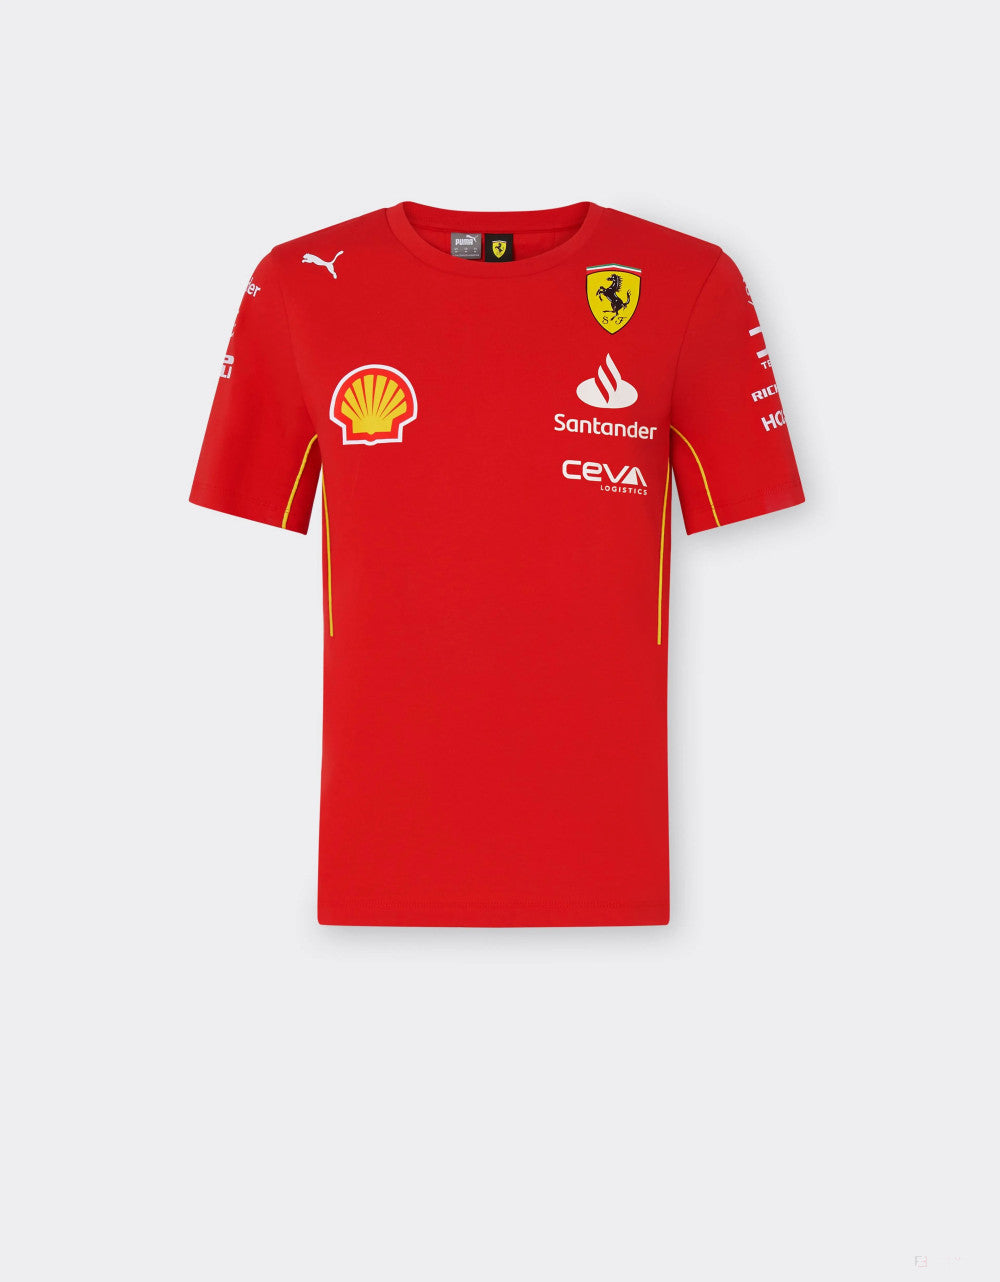 Ferrari tričko, Puma, týmové, dámské, červená, 2024